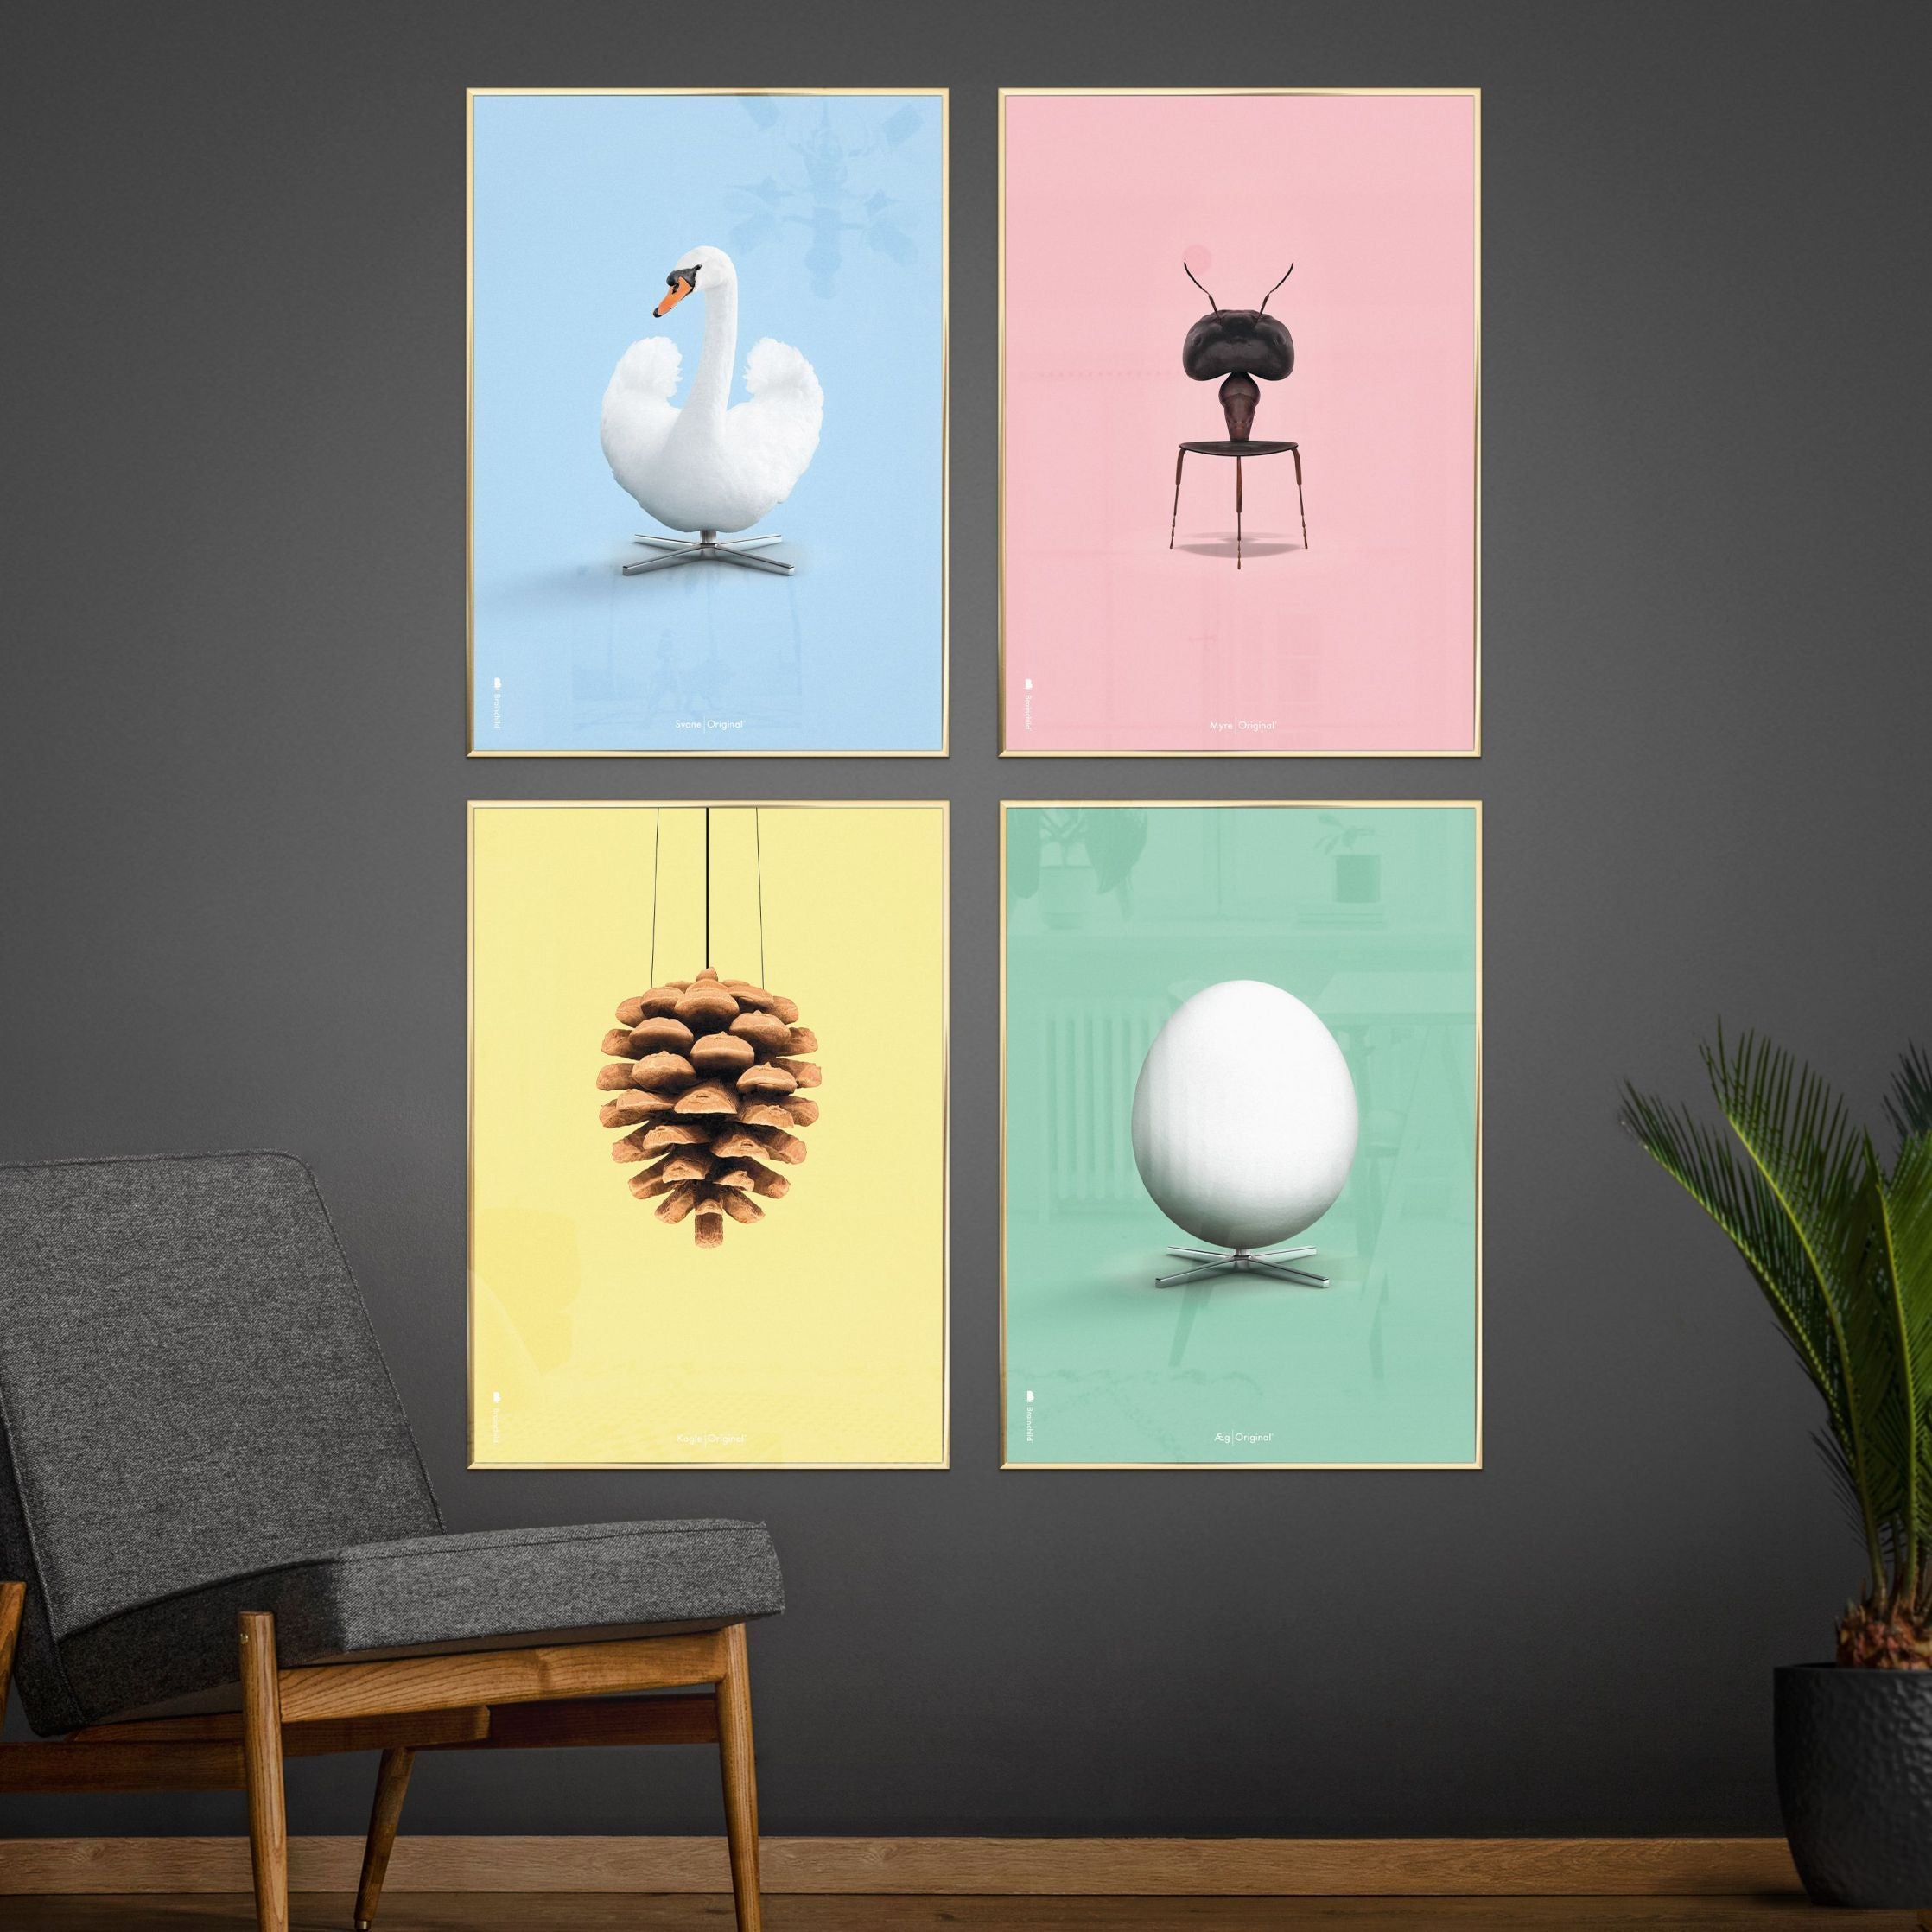 Klasický plakát s vaječným mozkem bez rámu 30 x40 cm, mátové zelené pozadí